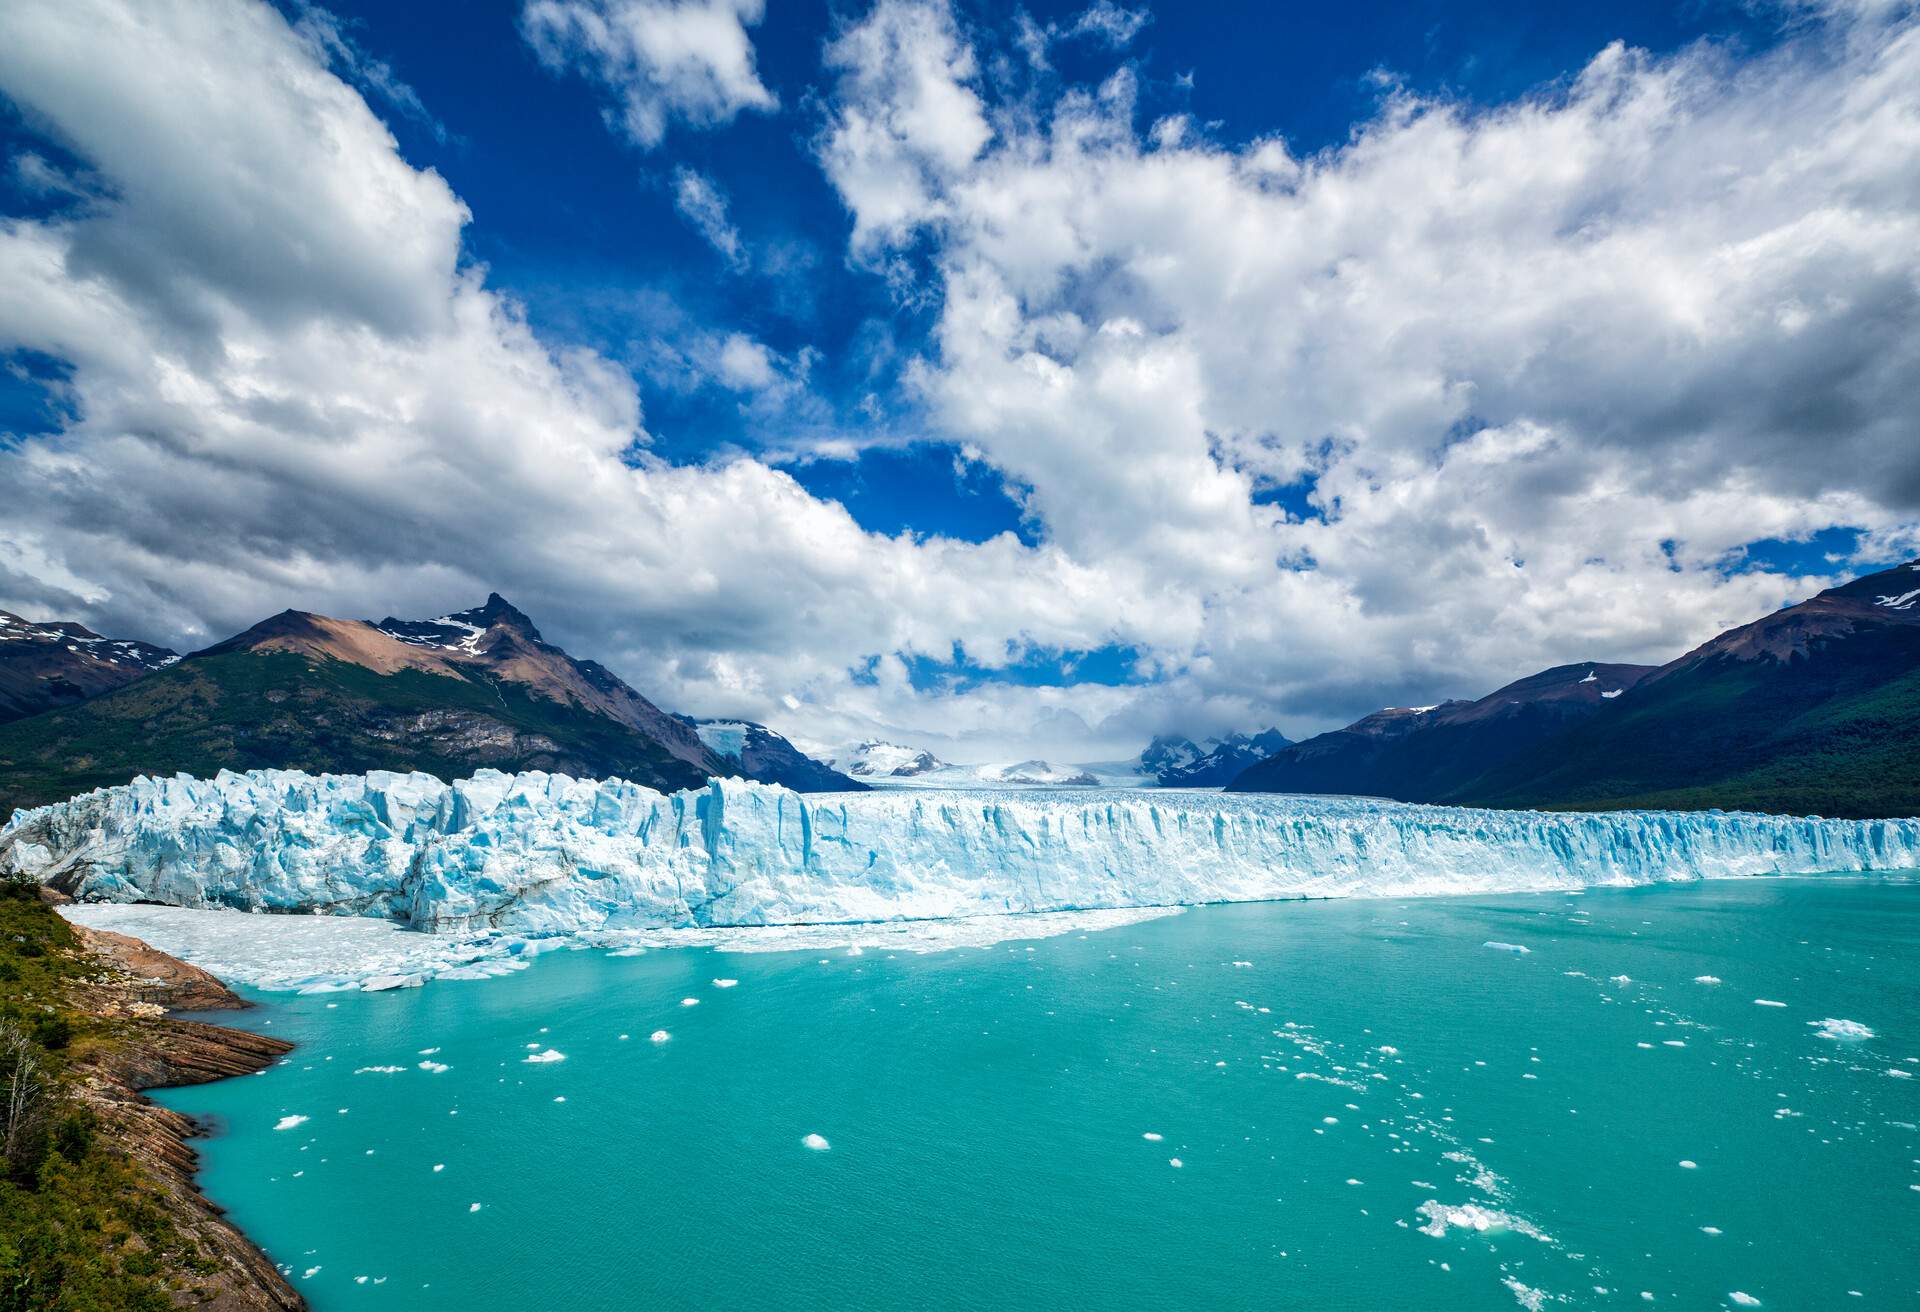 Famous Perito Moreno Glacier in Los Glaciares National Park, Patagonia, Argentina